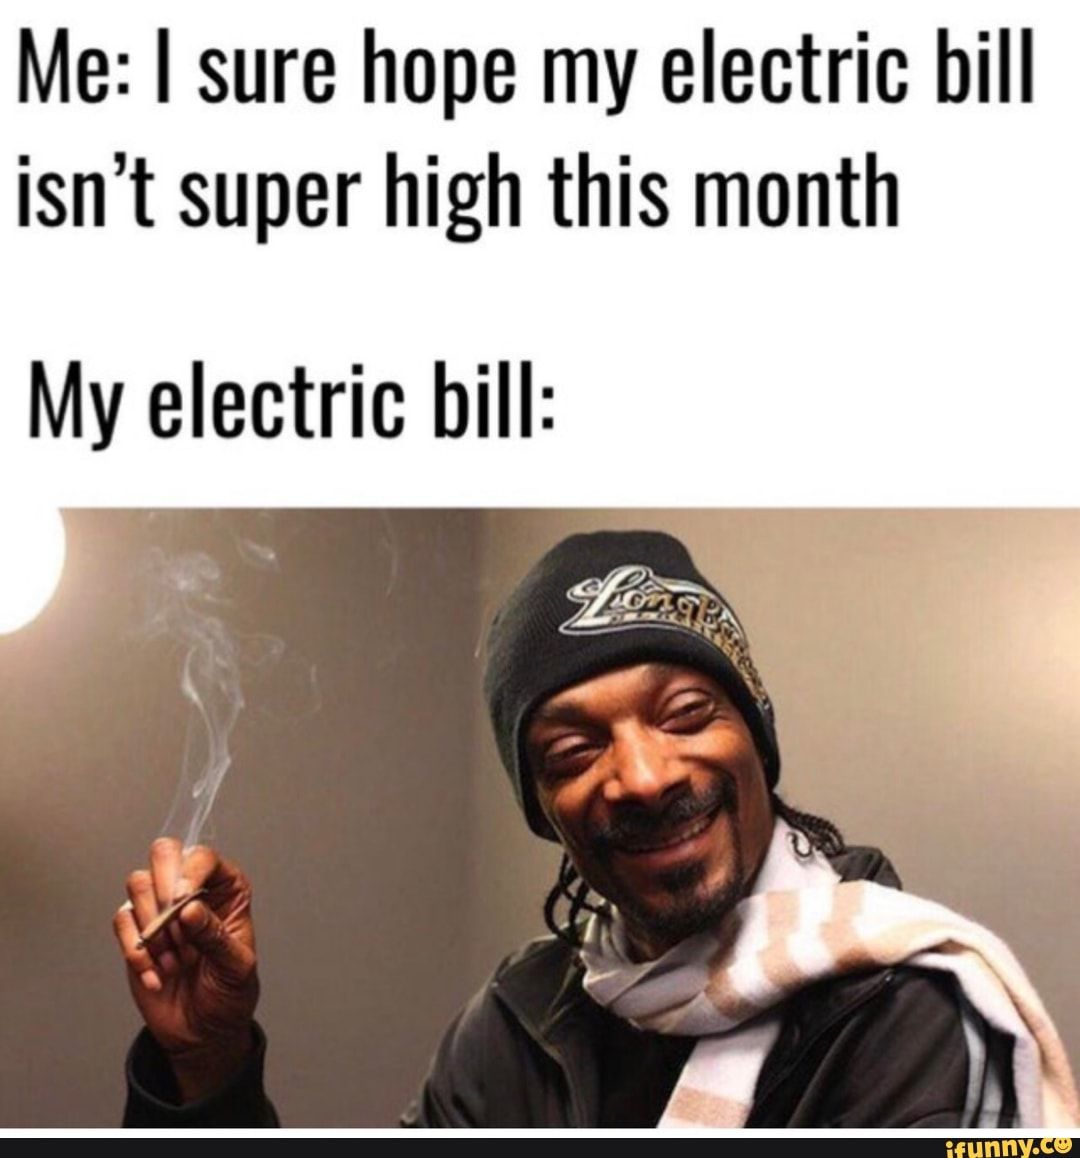 High electric bill.jpg